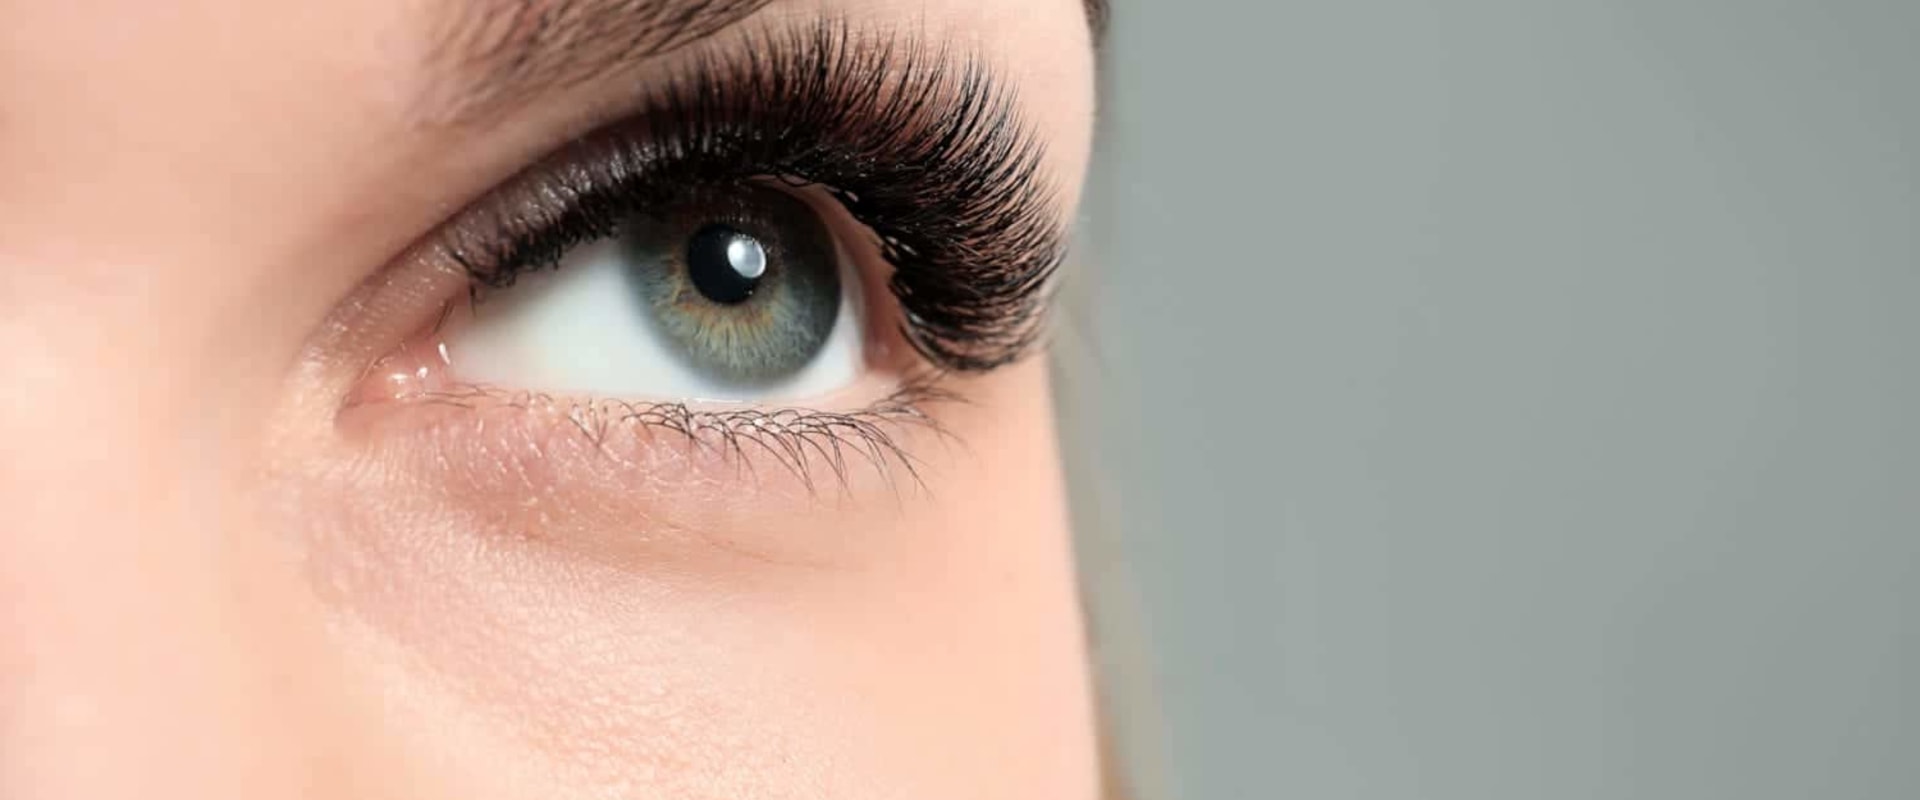 Are synthetic eyelashes vegan?